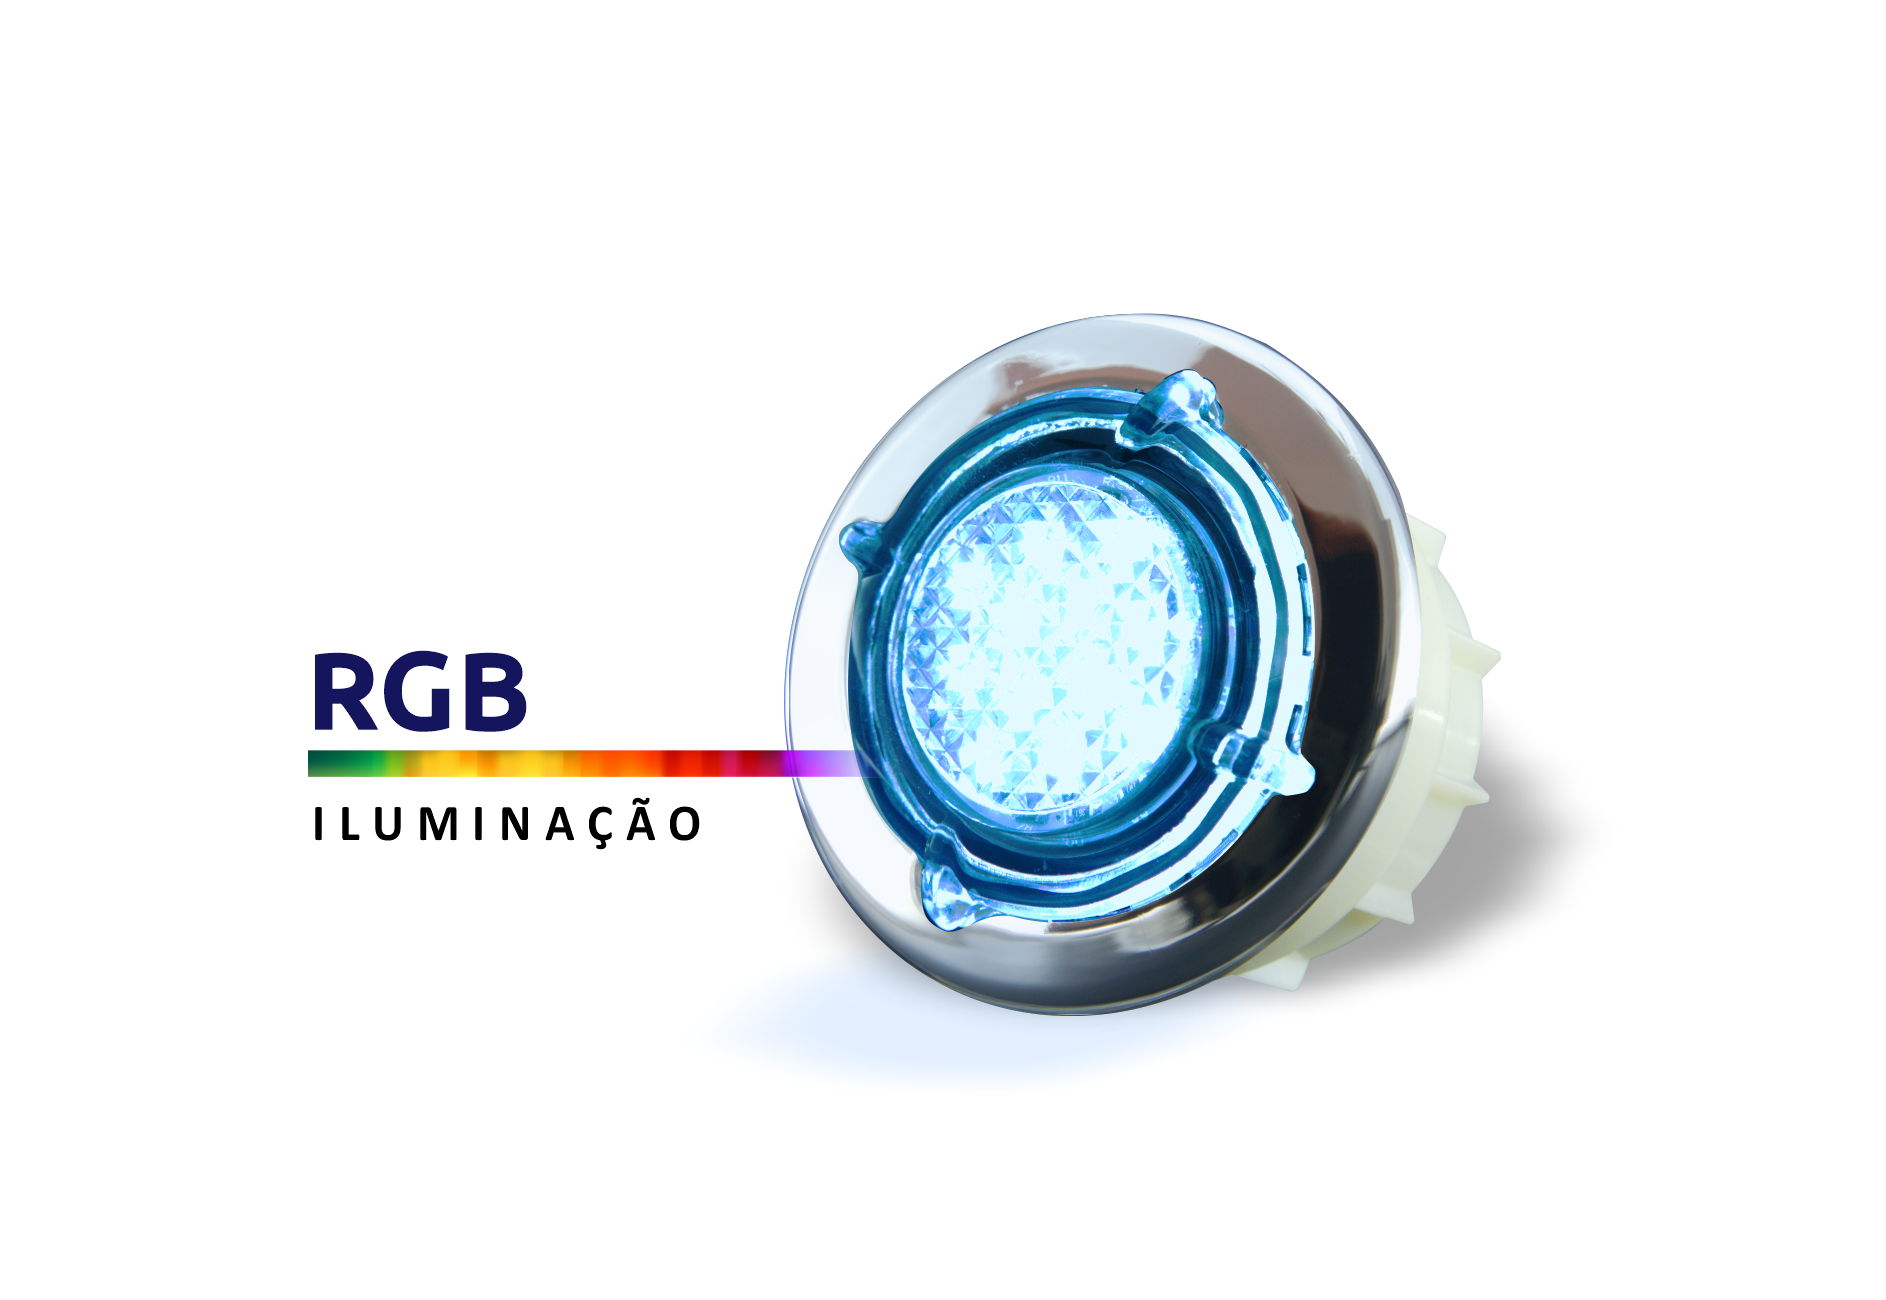 Aquecedor e Iluminação para Banheira e Spa Sinapse New Maxxi Cromo 8000W, 220V, 1 Spot Cromado - 4